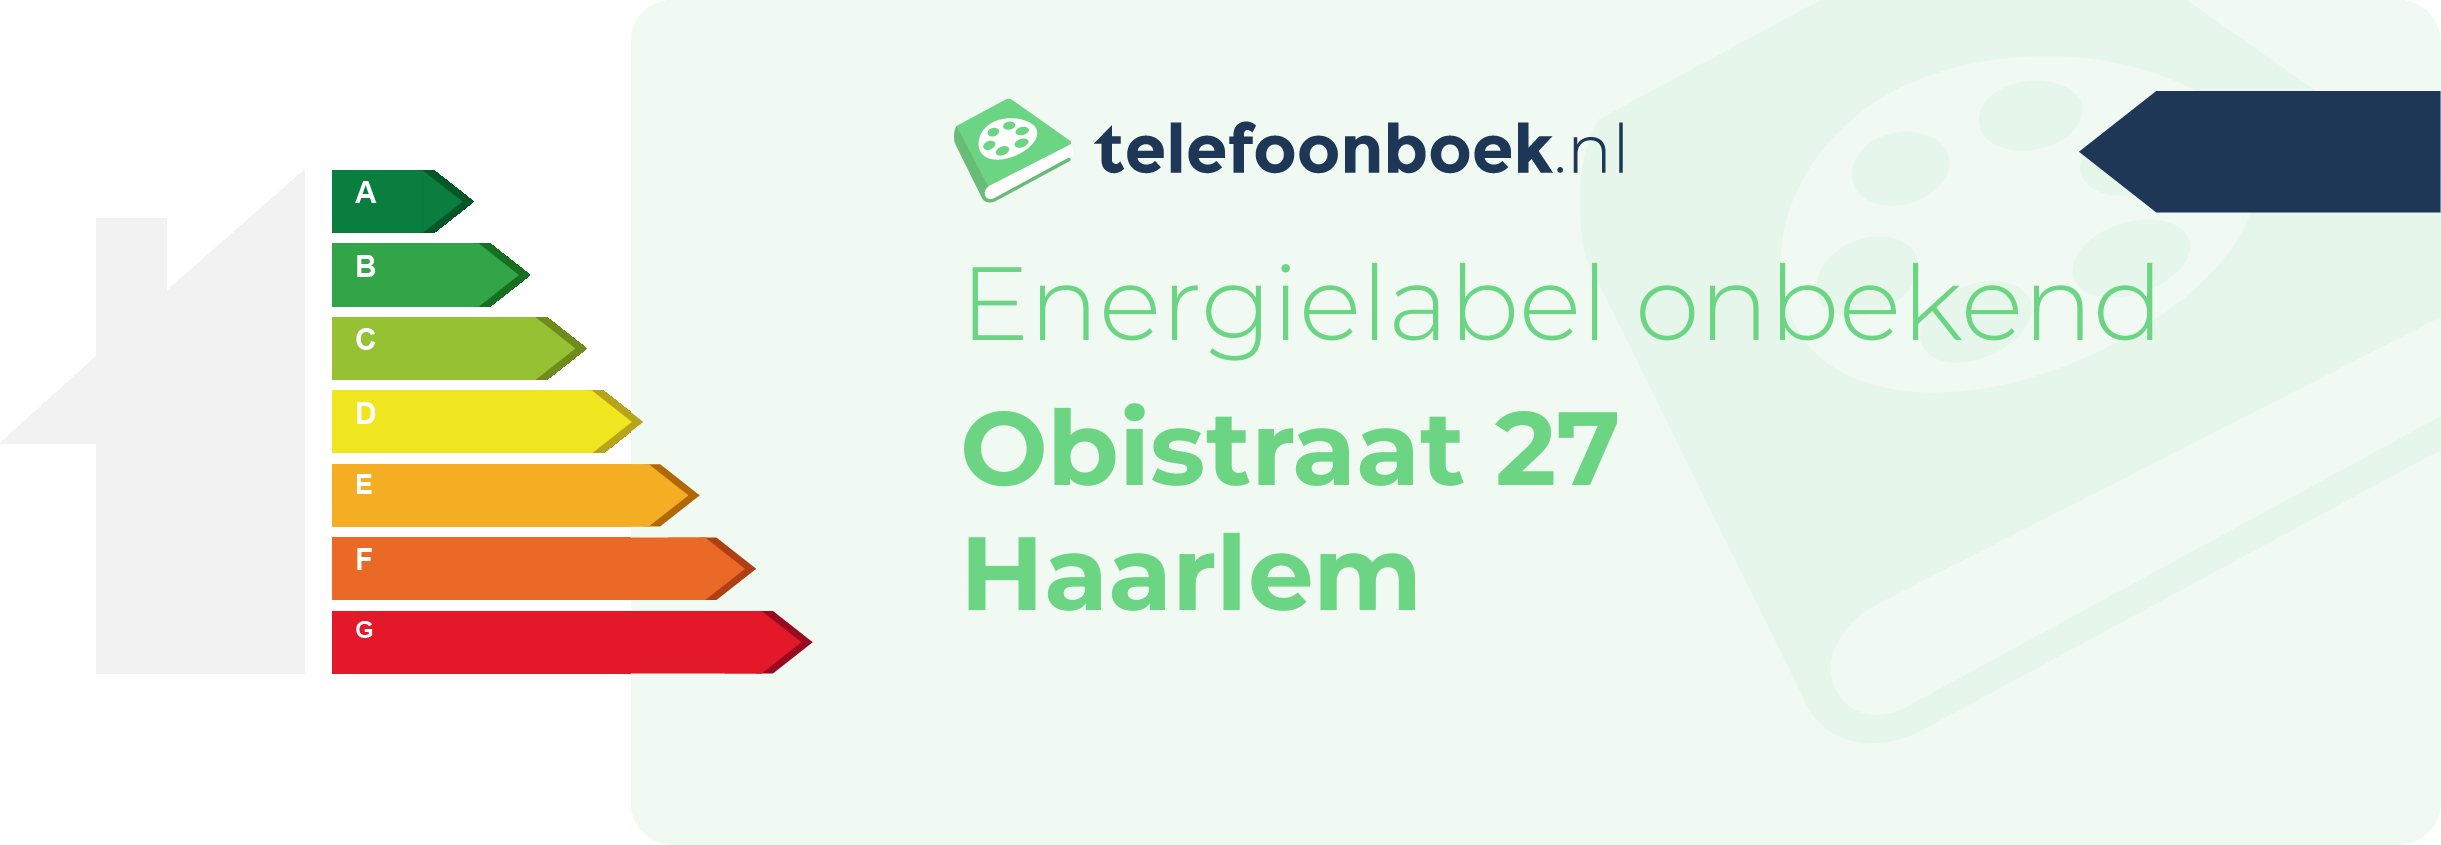 Energielabel Obistraat 27 Haarlem